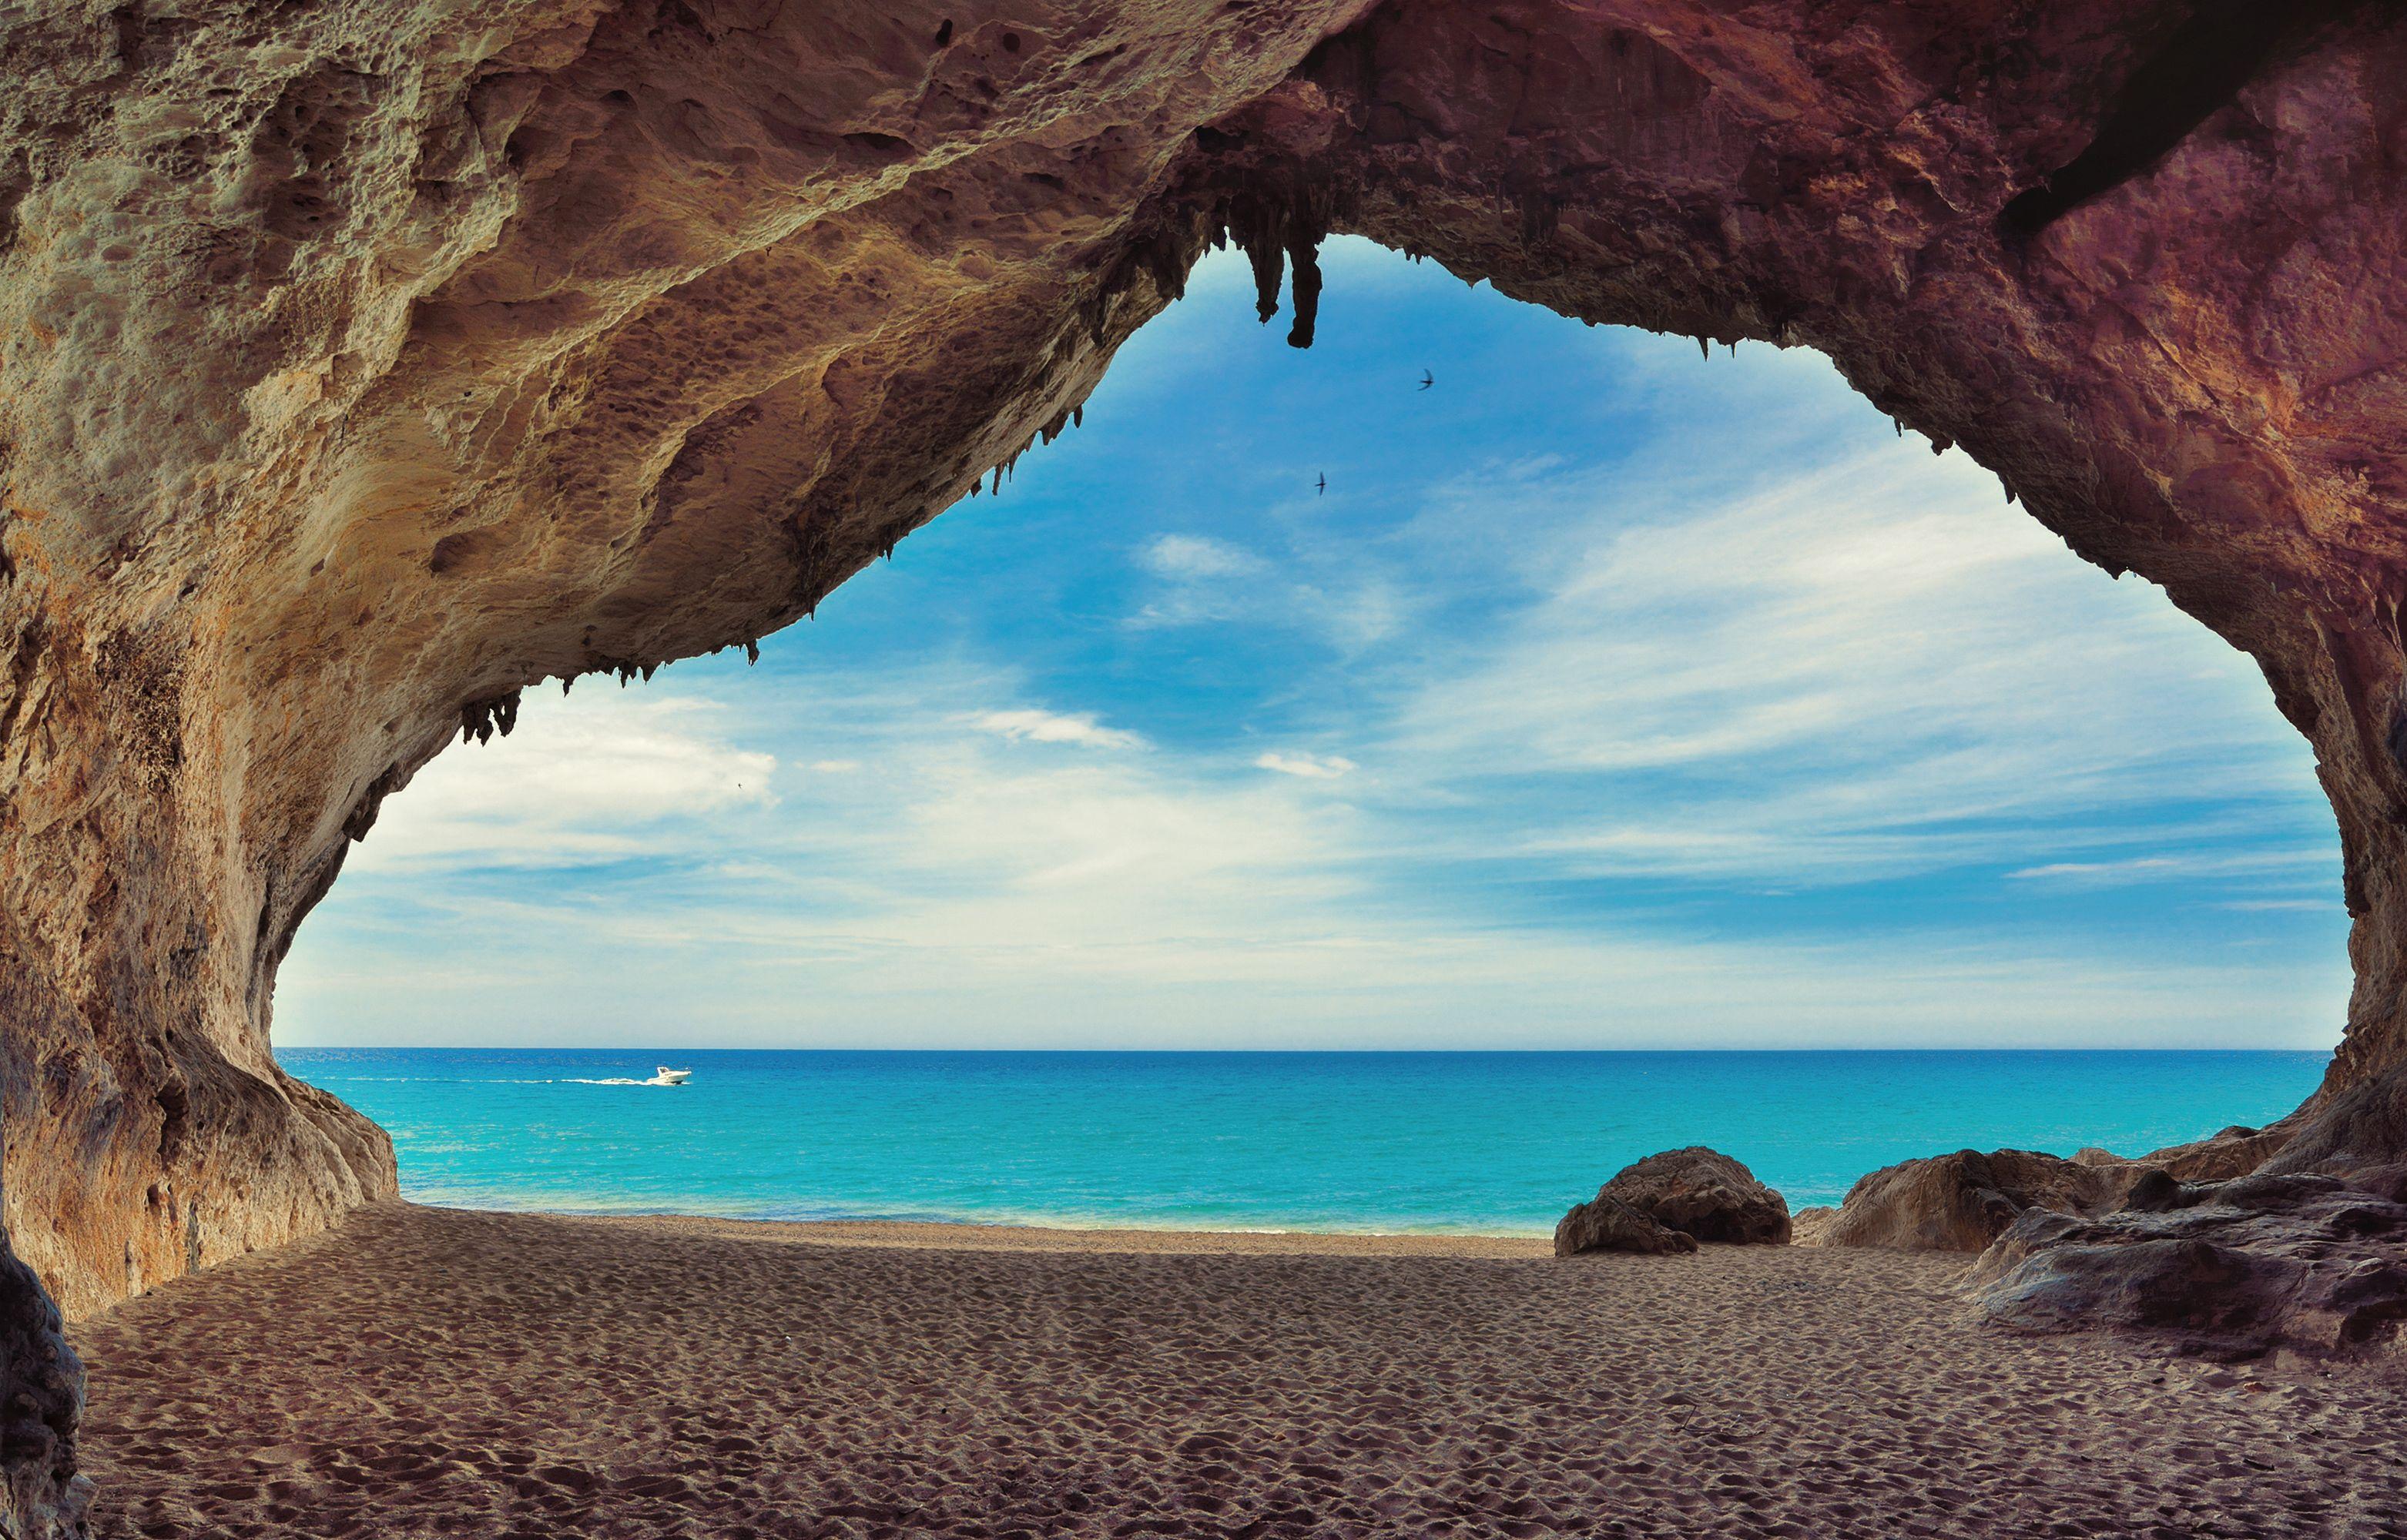 Caves on the beach Cala Luna, Sardinia, Italy. beaches